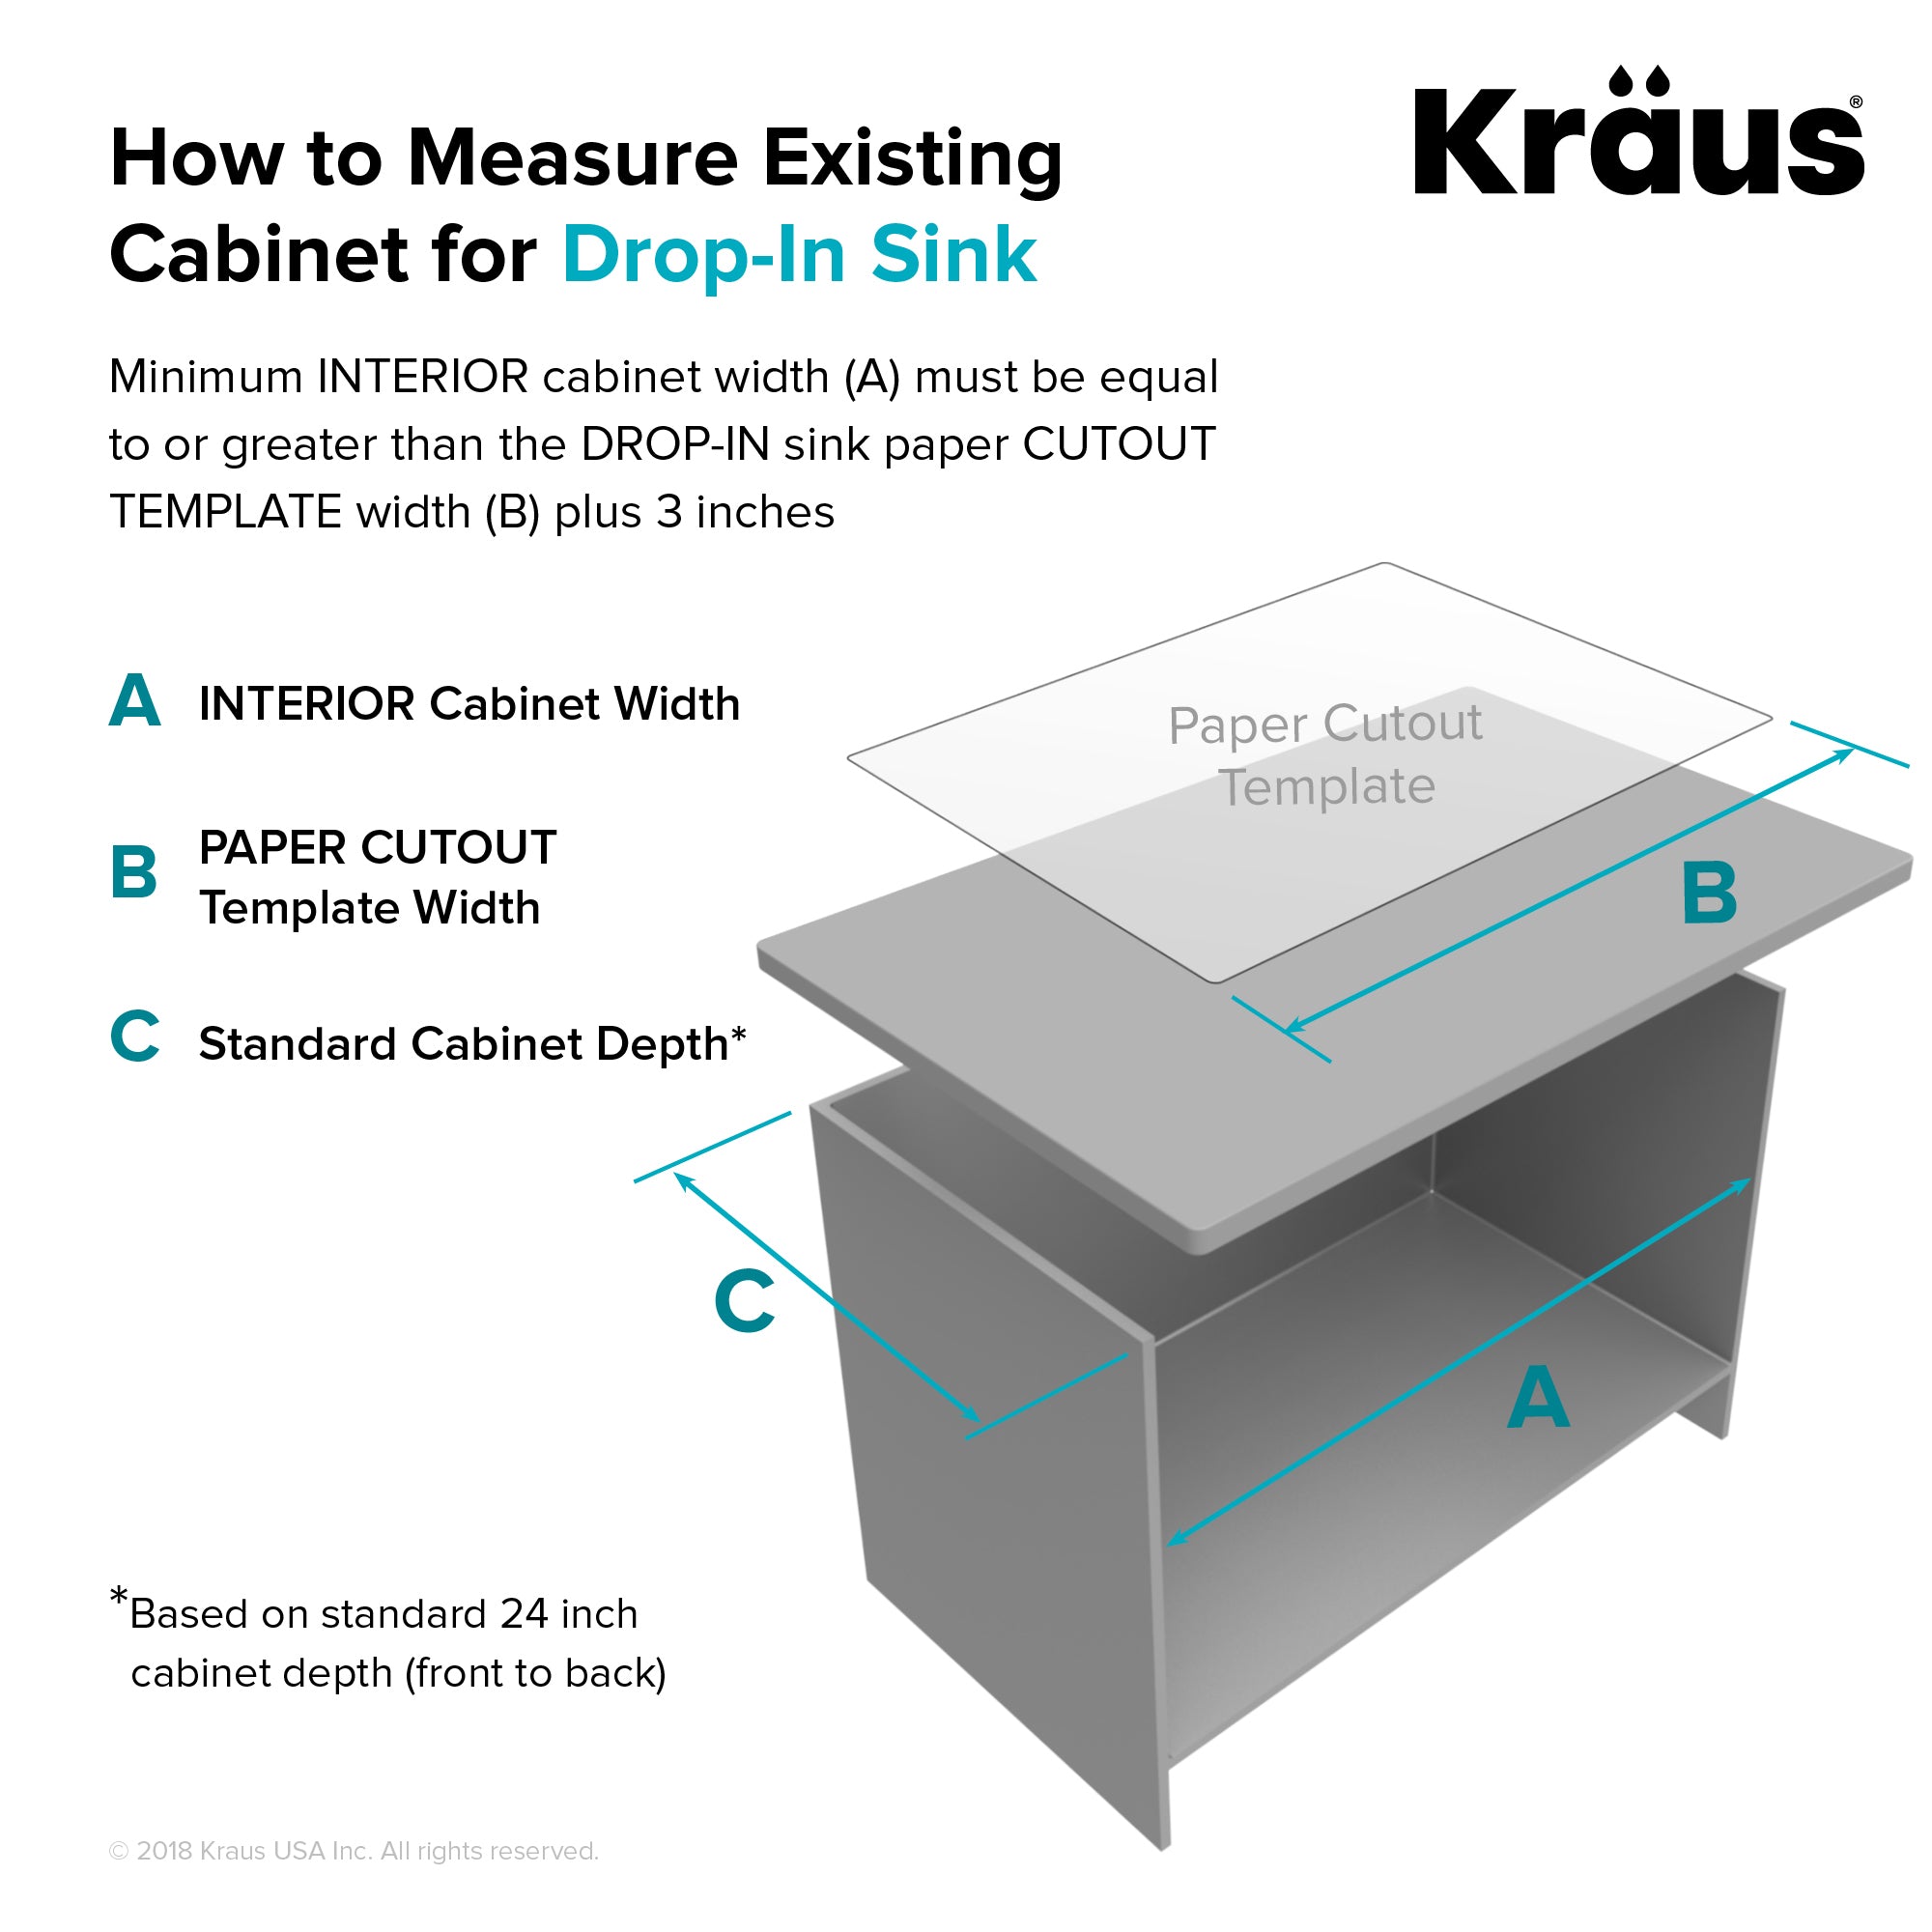 Kraus Standart Pro 25 in. Stainless Steel Kitchen Sink